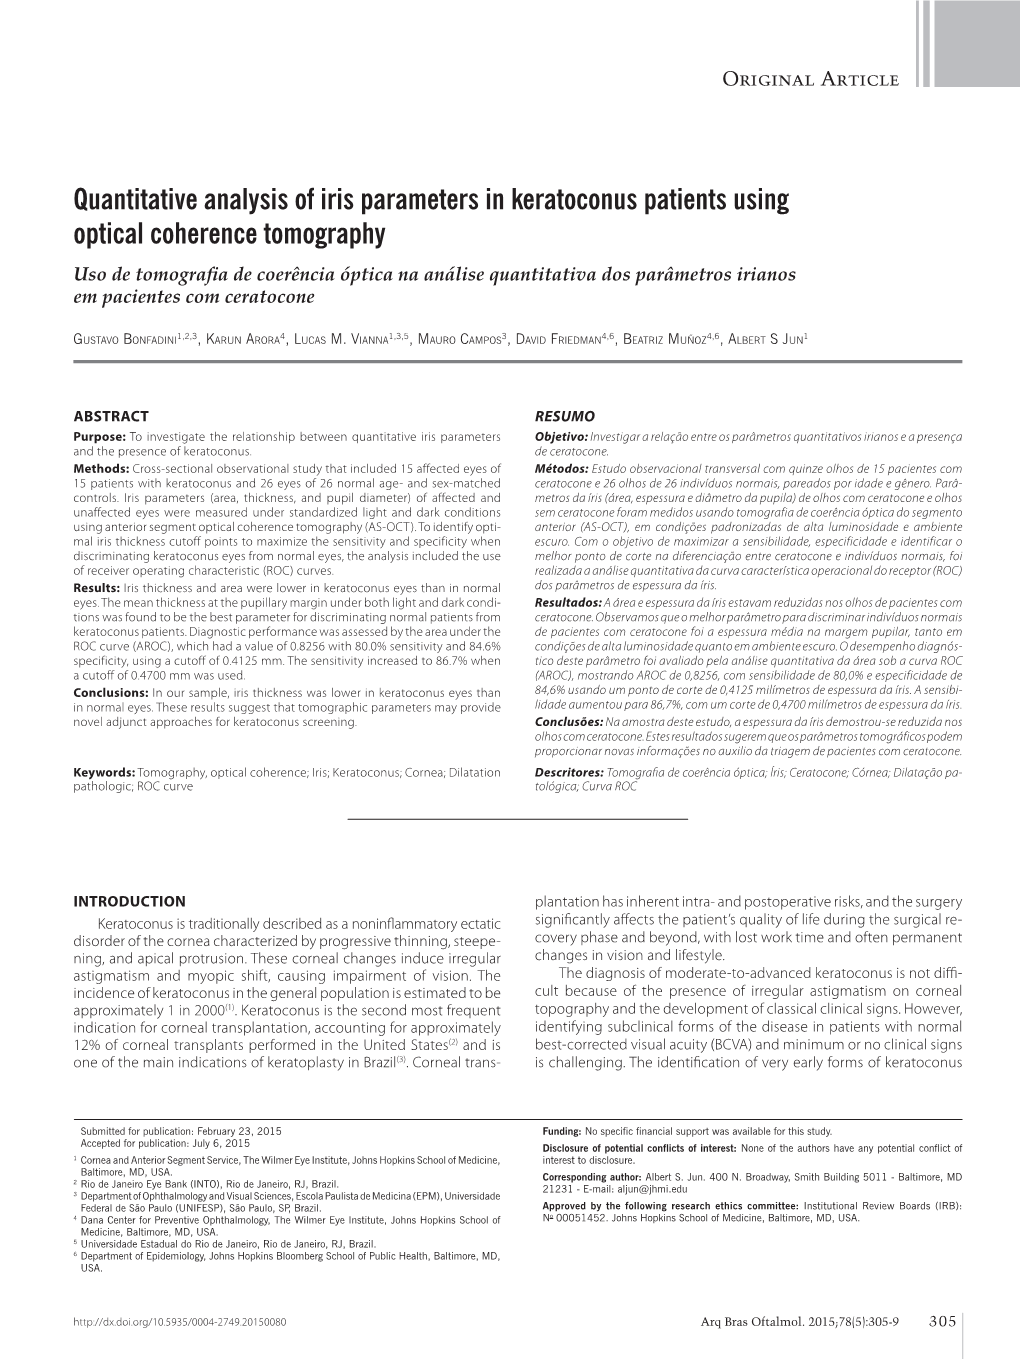 Quantitative Analysis of Iris Parameters in Keratoconus Patients